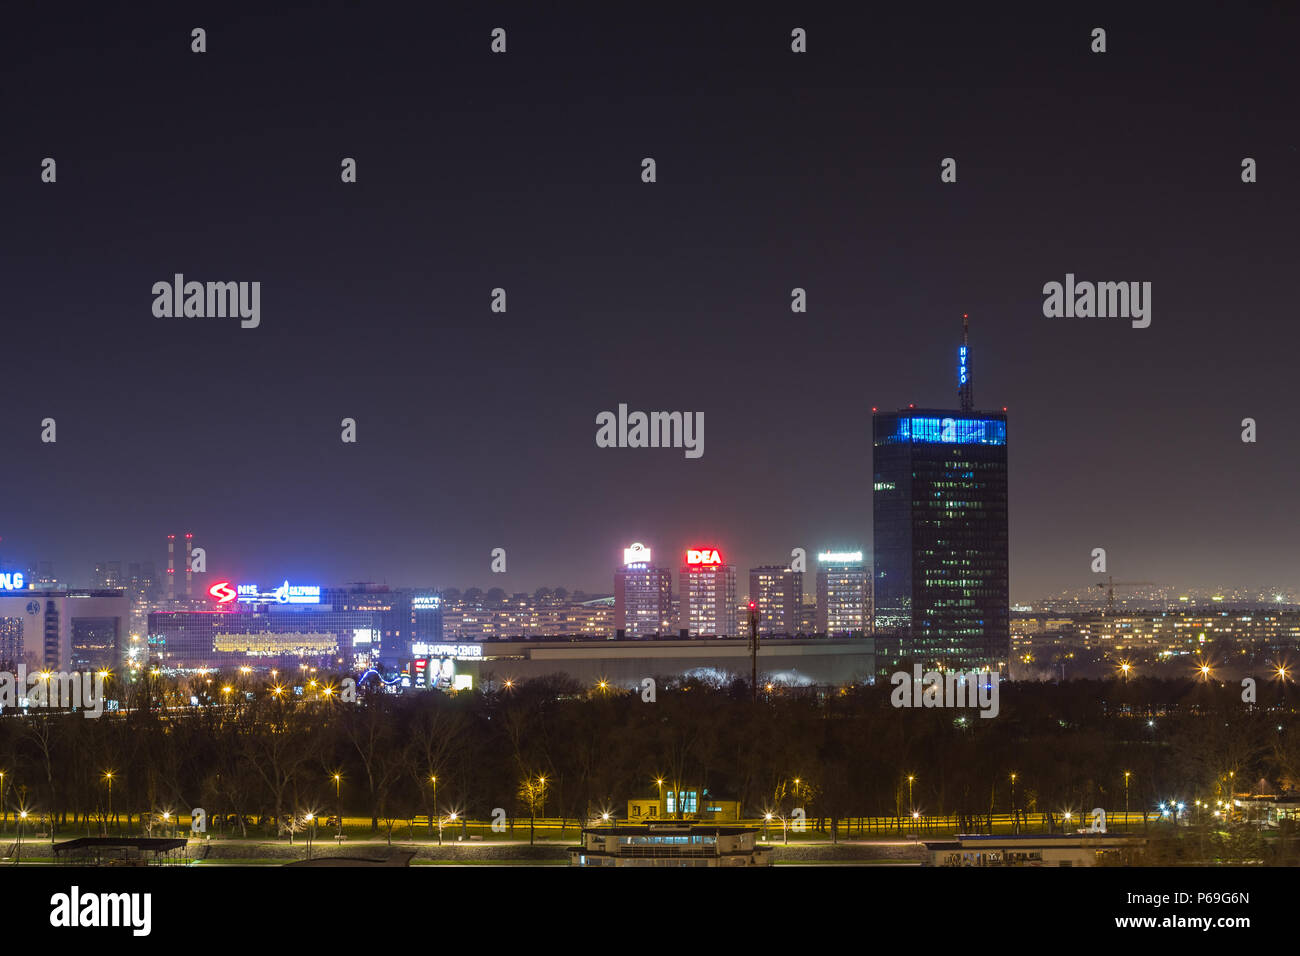 BELGRADE, SERBIE - Mars 21, 2015 : Skyline de New Belgrade (Beograd) vu par nuit à partir de la forteresse de Kalemegdan. Les principaux monuments de la distri Banque D'Images